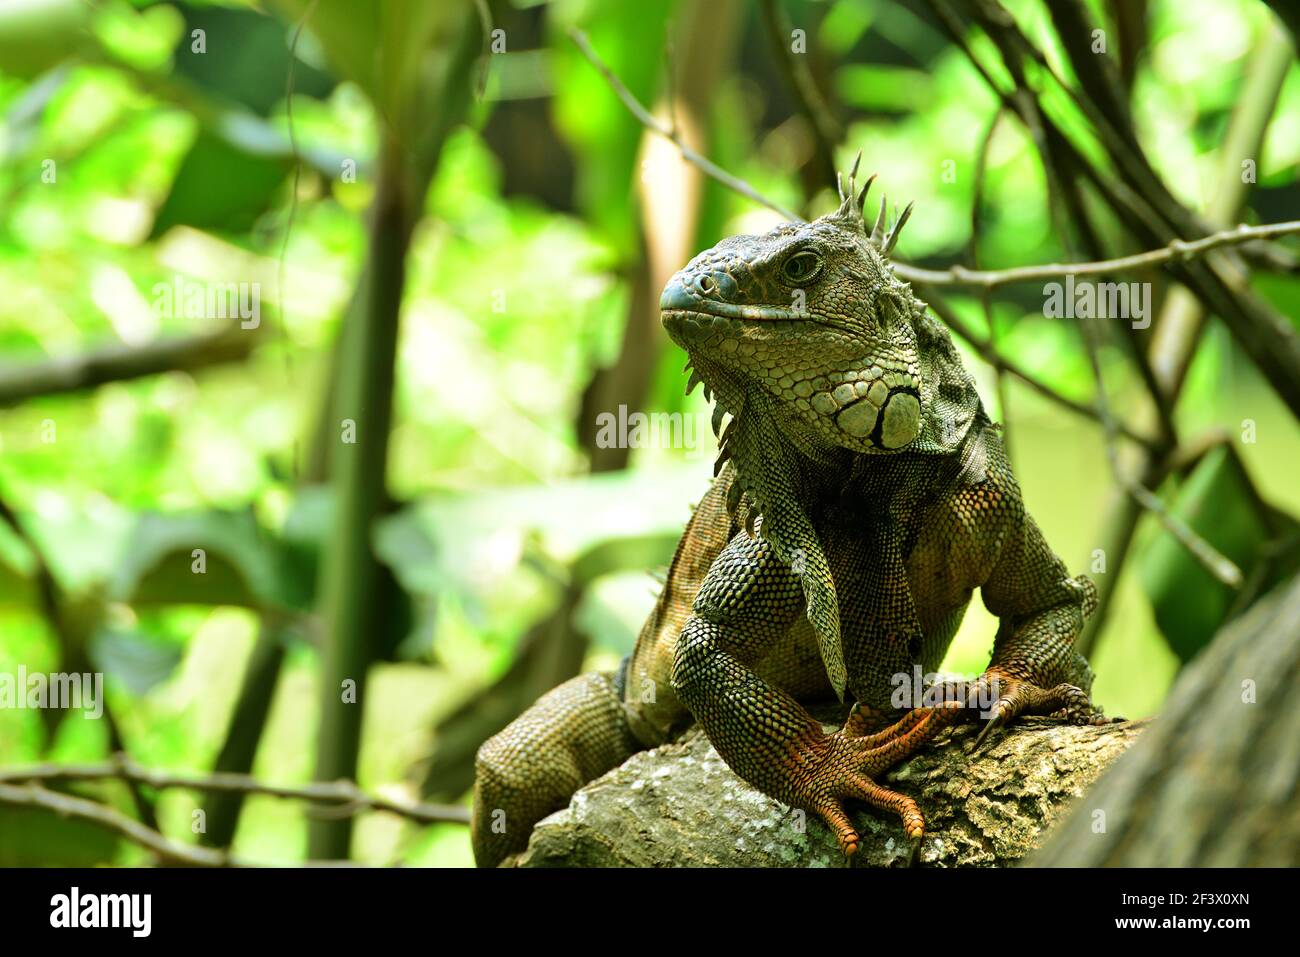 Grüner Leguan (Iguana Leguan), auch bekannt als amerikanischer Leguan oder der gemeinsame grüne Leguan in einem Baum. Valle del Cauca, Kolumbien Stockfoto